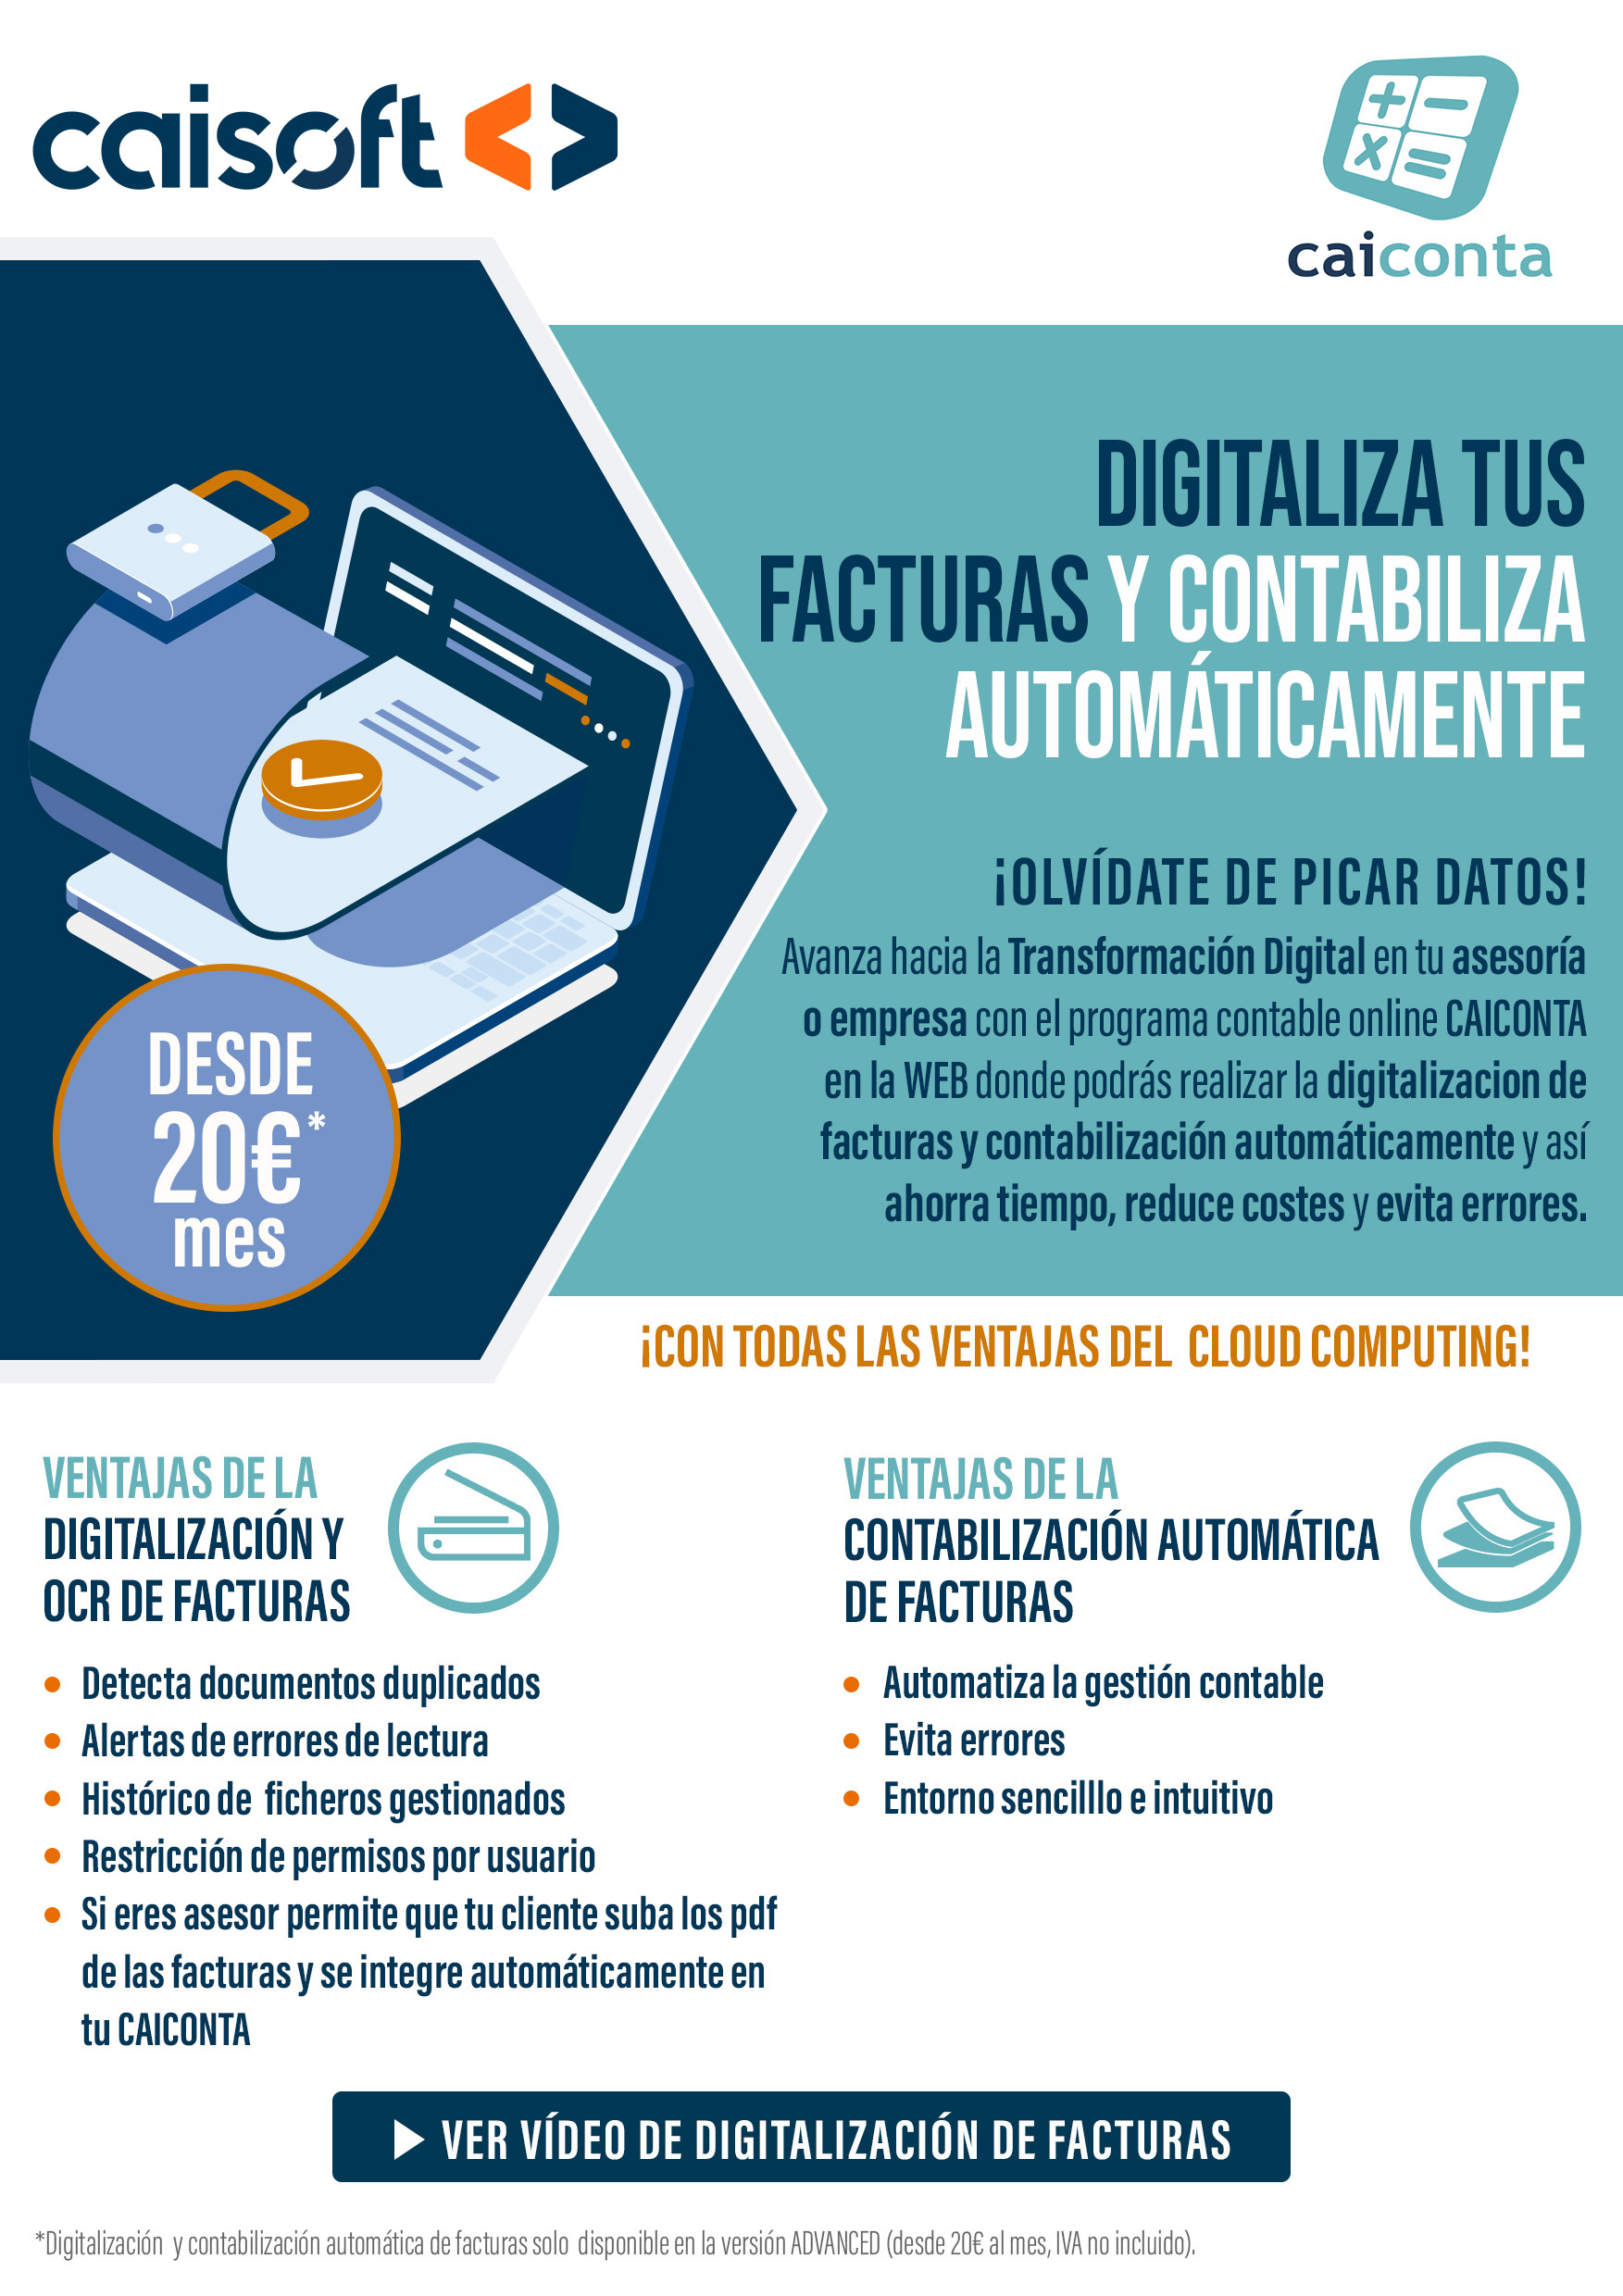 Digitalización de facturas y contabiliza automáticamente en CAICONTA en la web